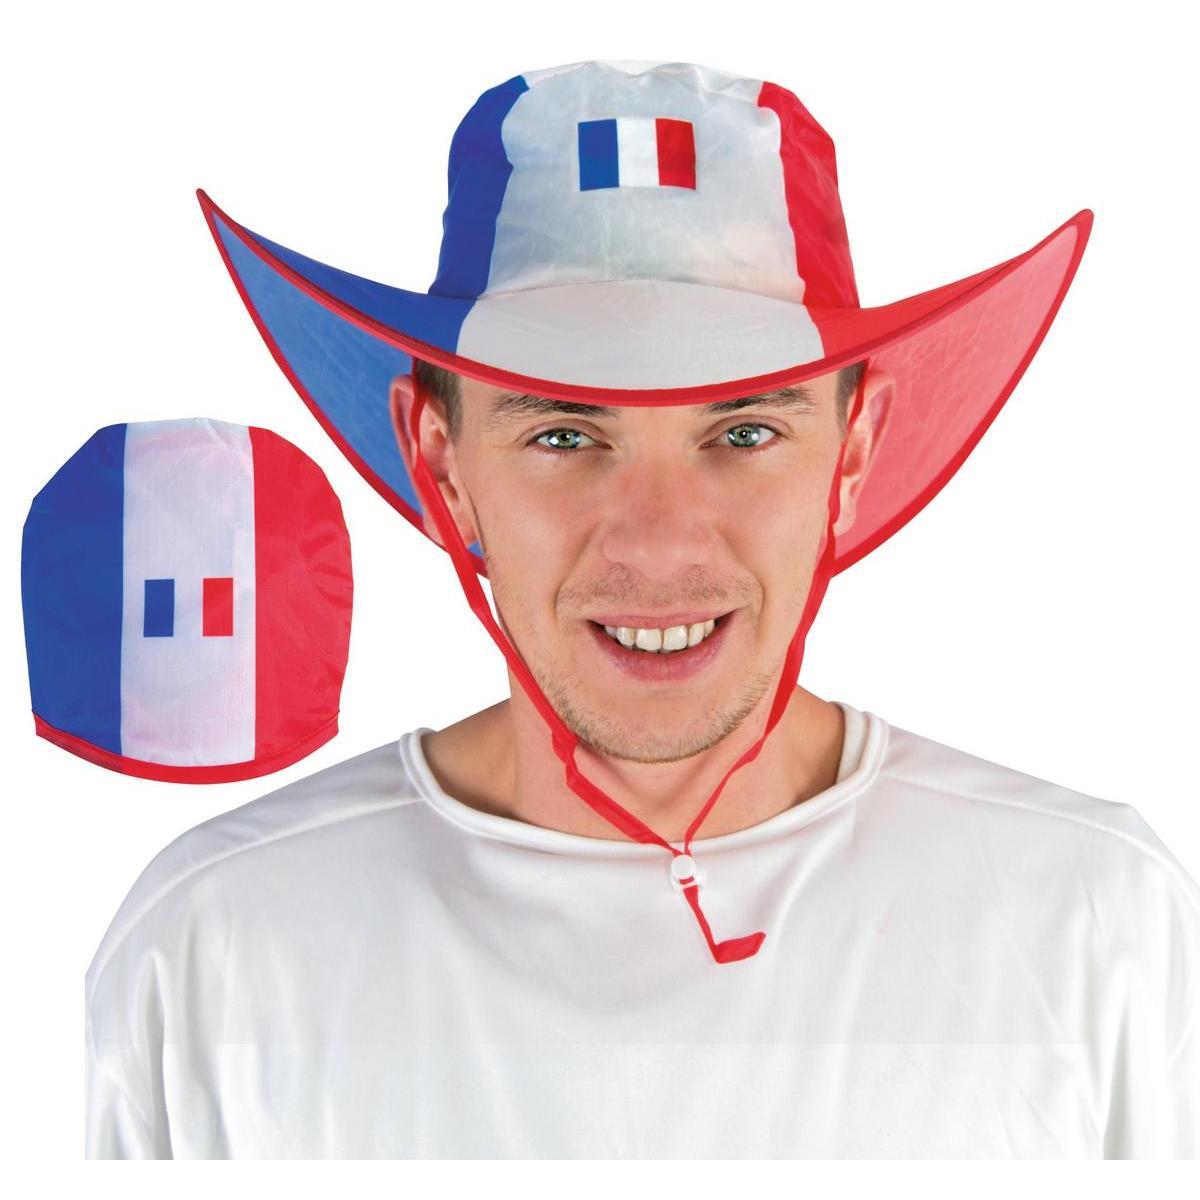 Chapeau de supporter équipe de France - H 35 x Ø 15 cm - Bleu, blanc et rouge